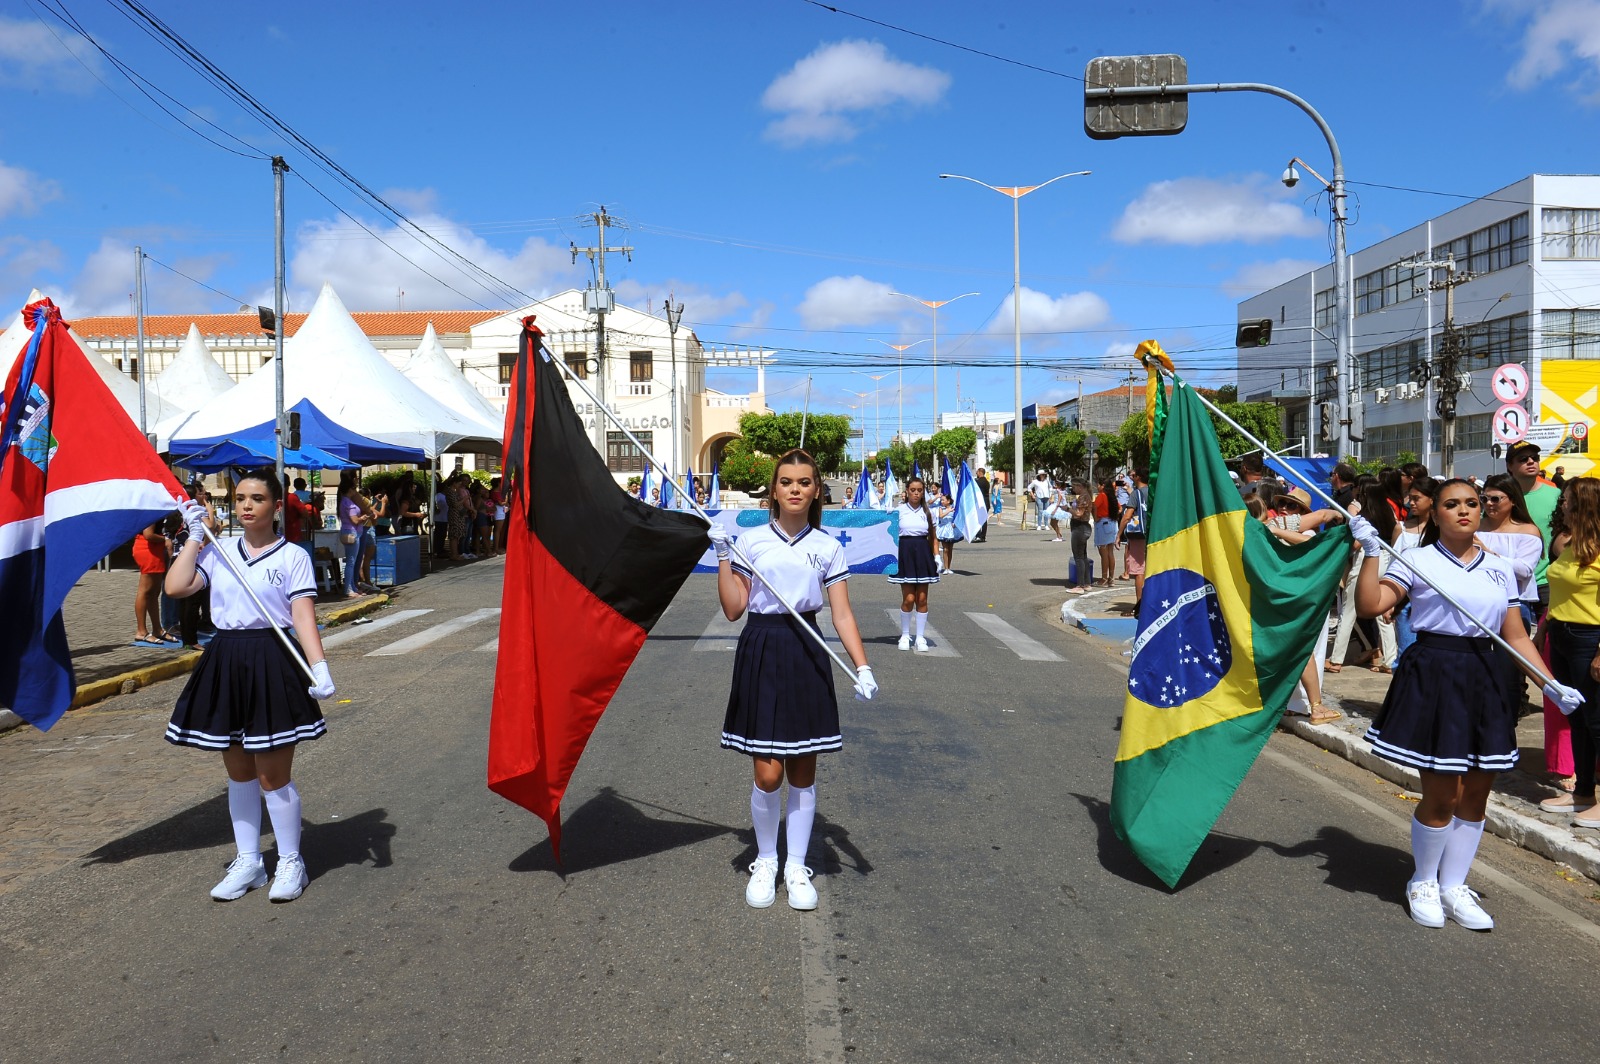 Desfiles-Civicos-em-Monteiro-acontecem-com-grande-presenca-de-publico-e-autoridades-24 Desfiles Cívicos em Monteiro acontecem com grande presença de público e autoridades